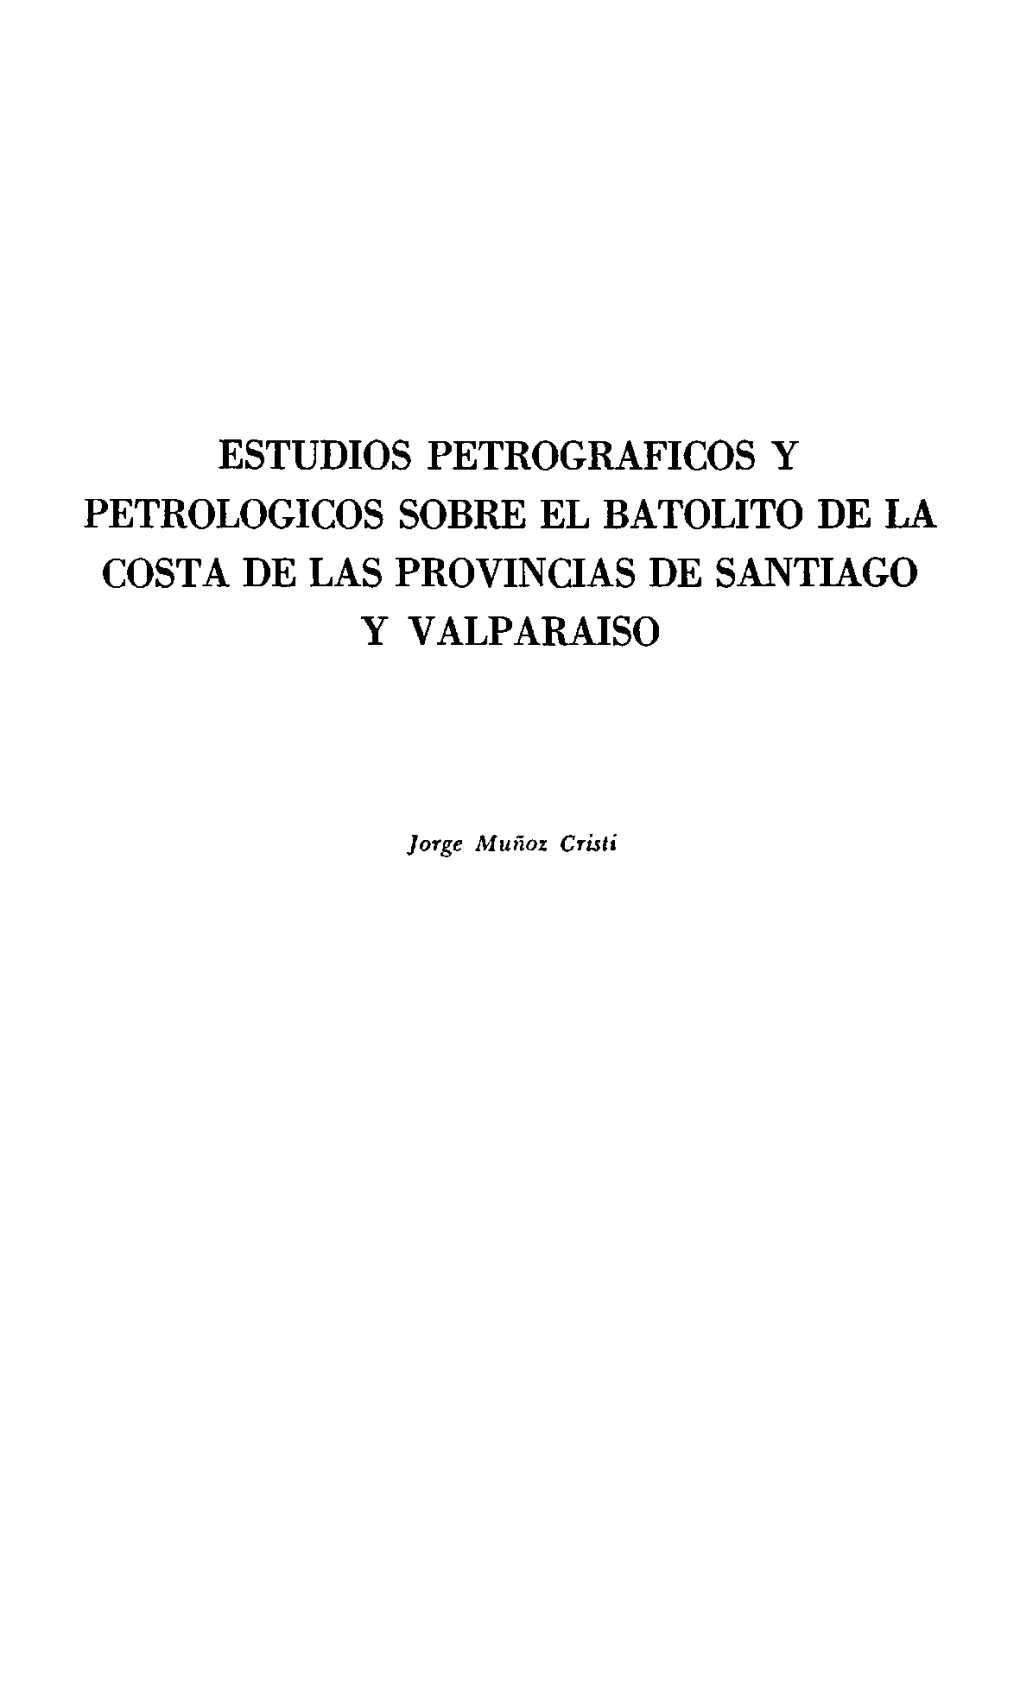 Estudios Petrograficos Santiago Y Valparaiso